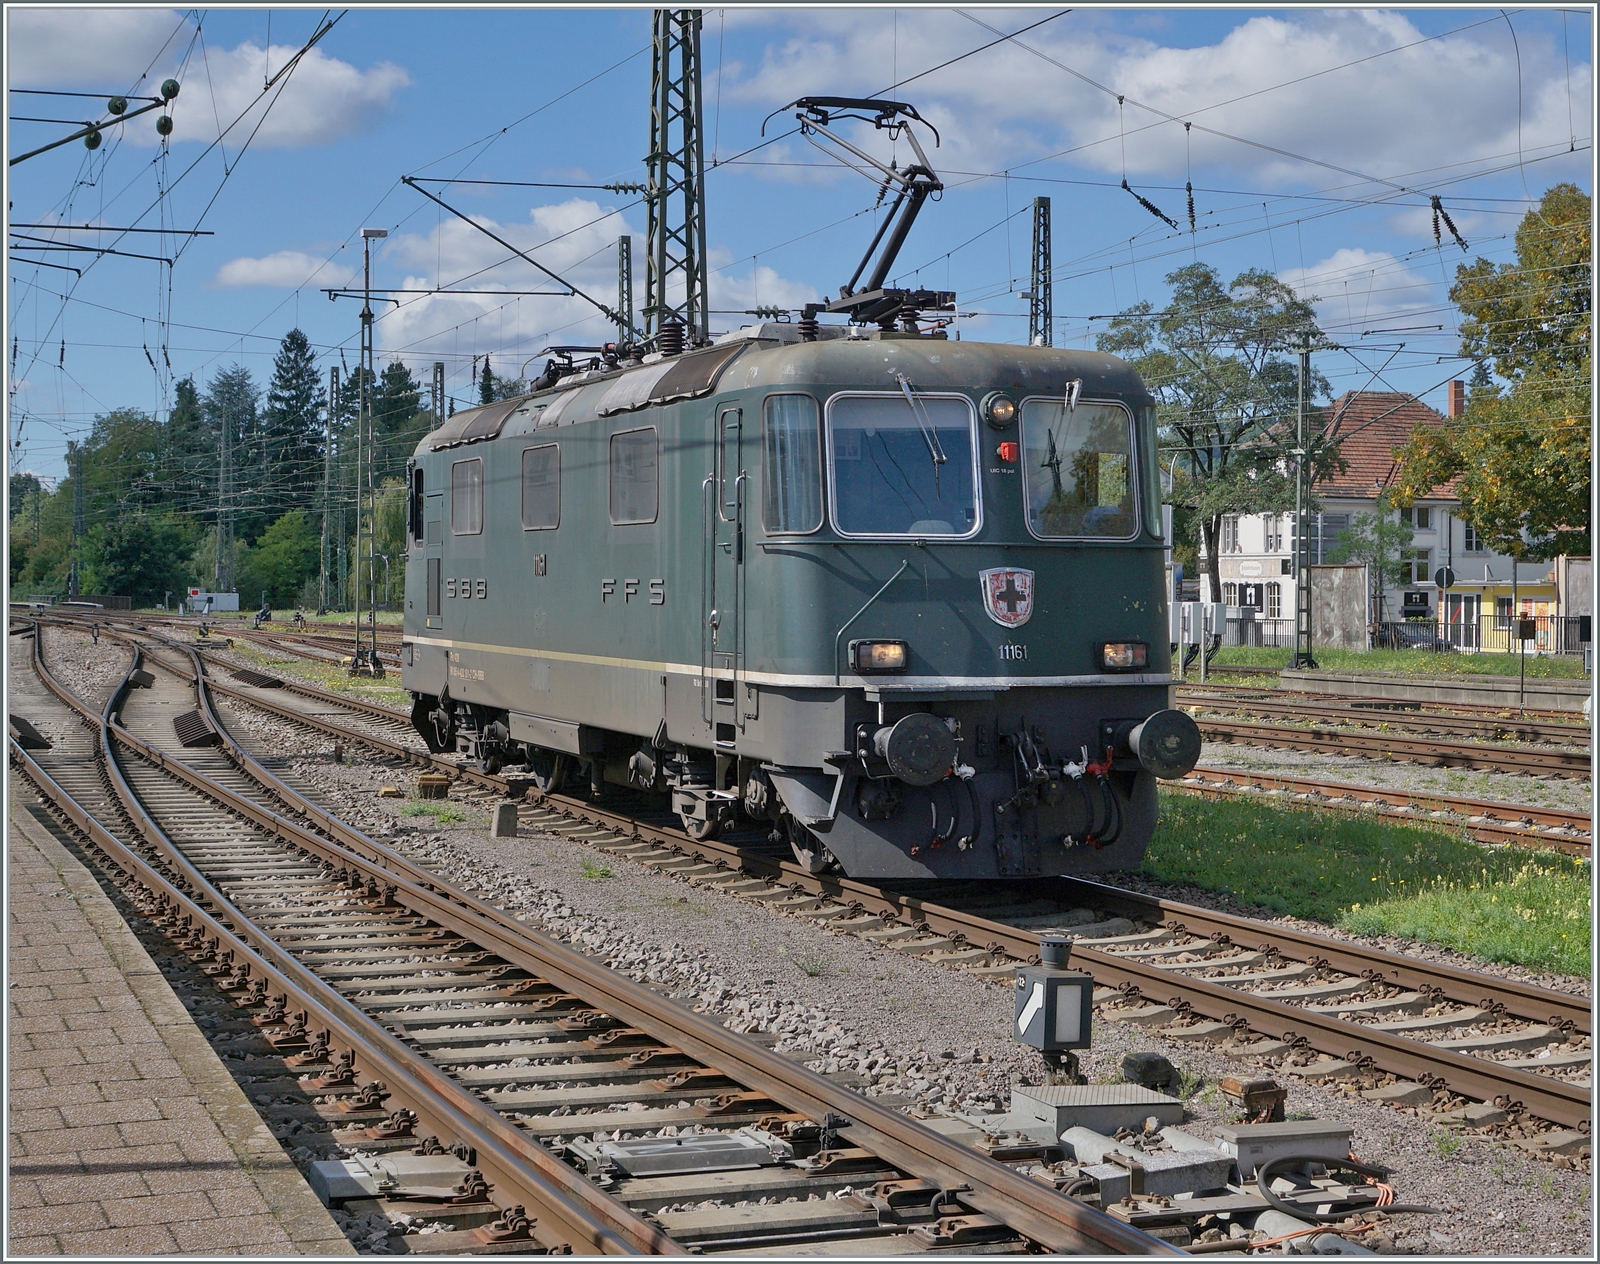 Für die Weiterfahrt des in Singen angekommen IC Stuttgart - Zürich ist die SBB Re 4/4 II 11161 vorgesehen, die sich bereits dem Zug nähert.

19. September 2022